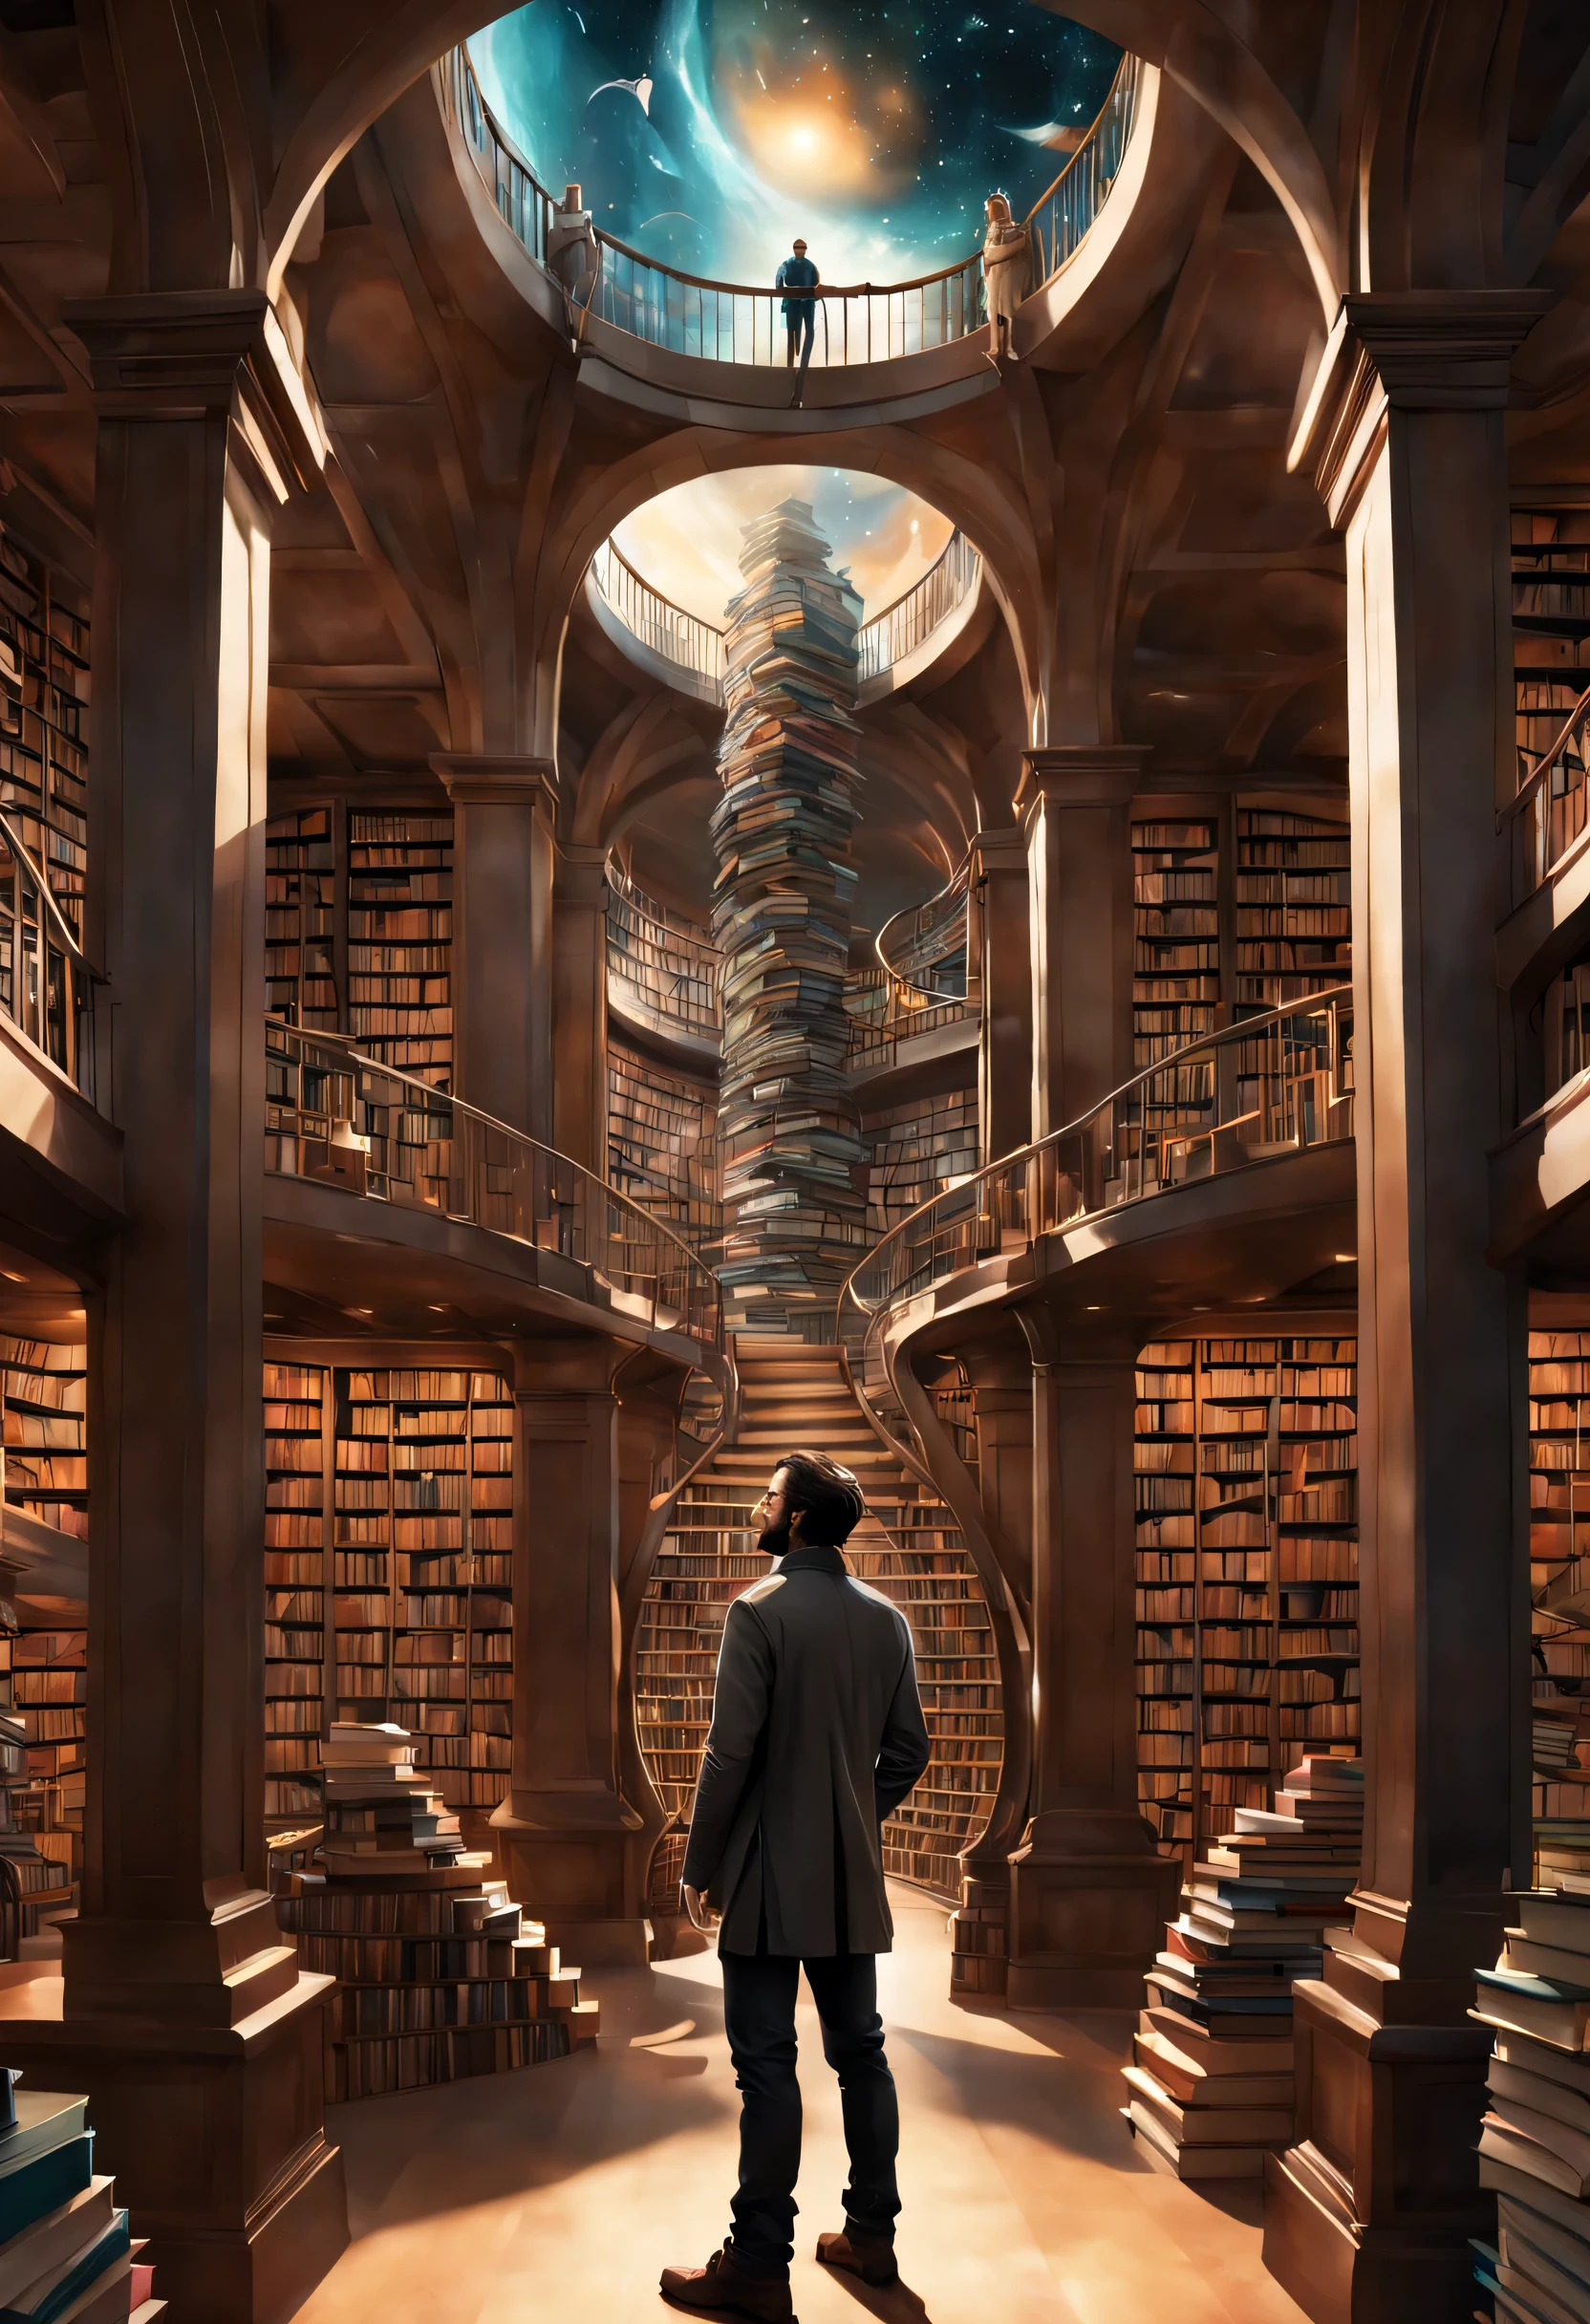 一個男人站在圖書館裡拿著書的圖片, 無盡的書, 太空圖書館藝術品, 書洞, 奇幻書籍插圖, 螺旋形書架上擺滿了書, 無限天文圖書館, 一個永恆的圖書館, 哥德史詩圖書館概念, 魔法圖書館, 日本科幻書籍藝術, 比普爾和尚吉羅, 到處都是書
